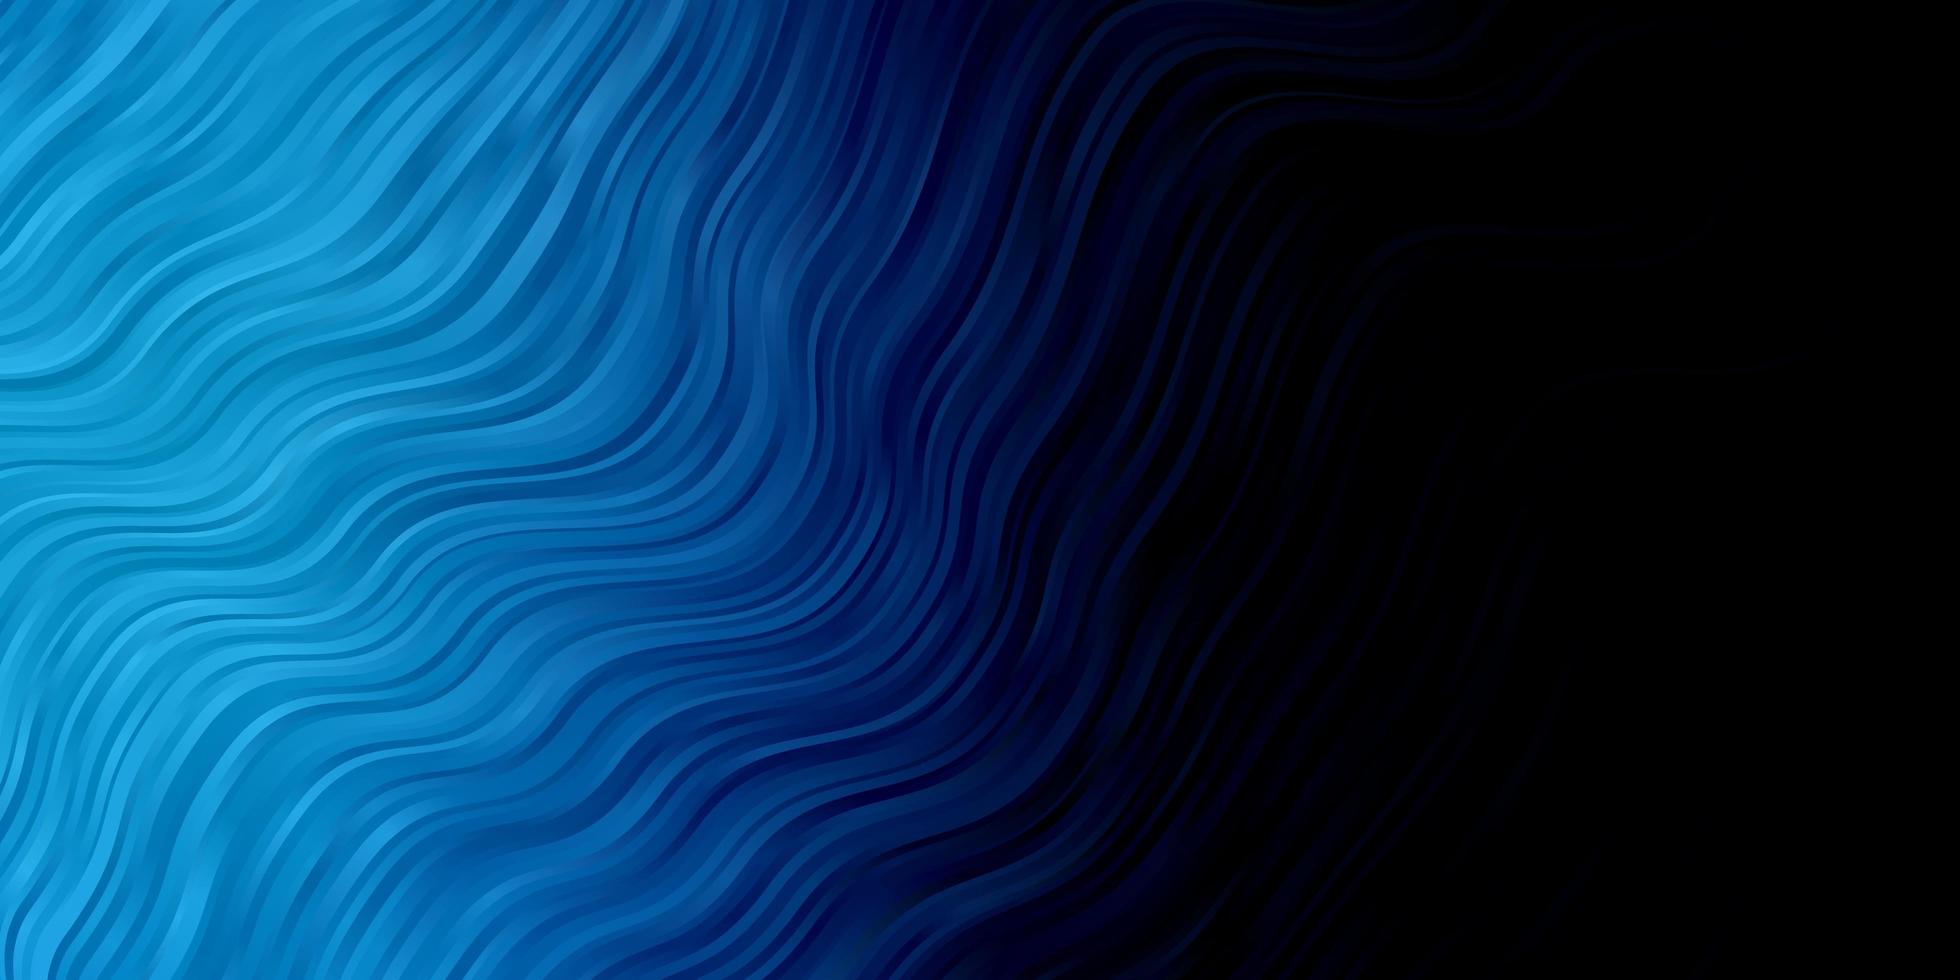 plantilla de vector azul oscuro con líneas torcidas.